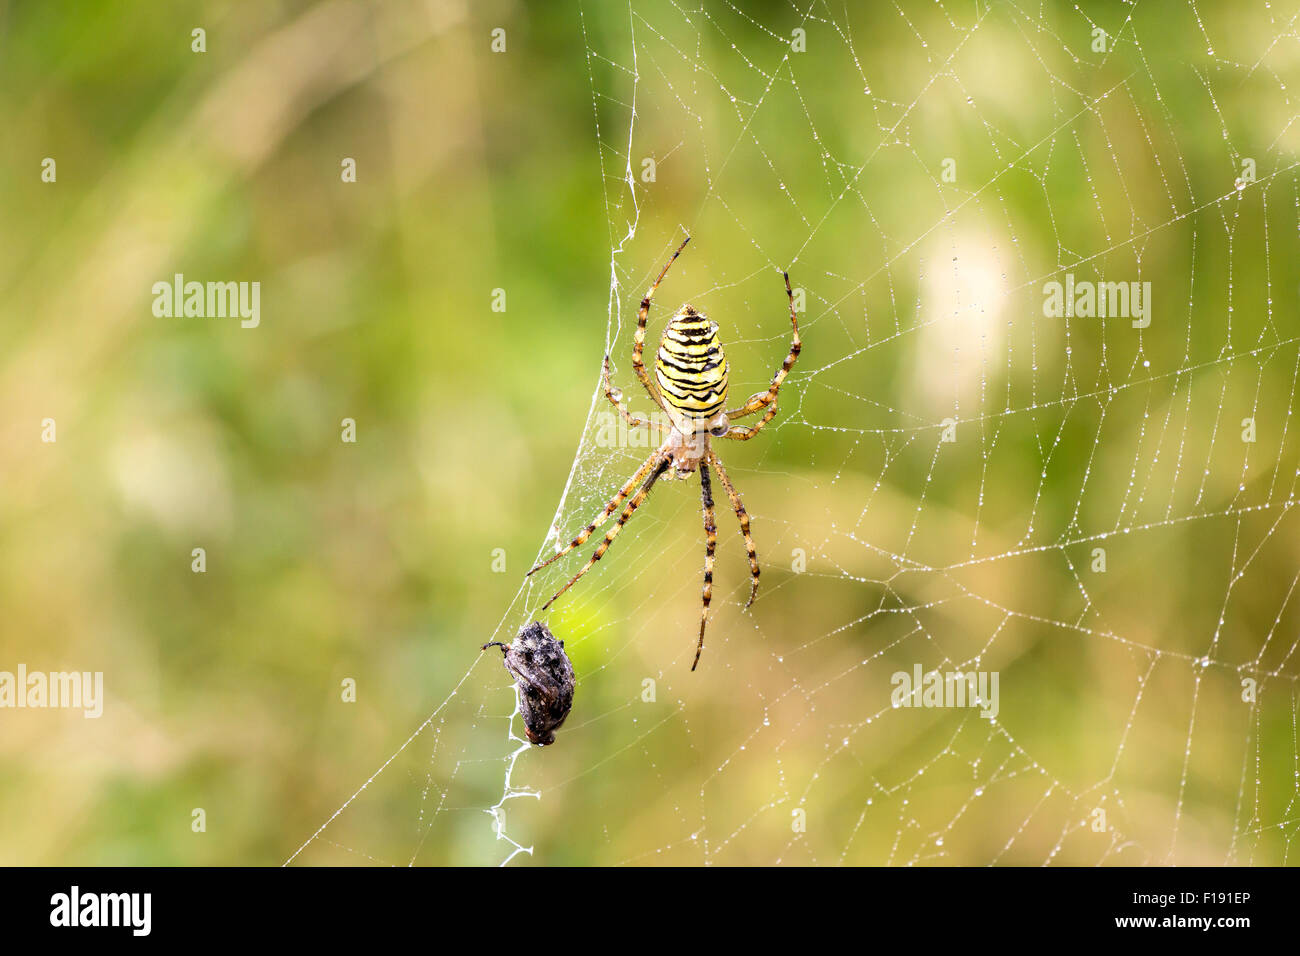 Garden spider (Argiope aurantia) in its net with prey Stock Photo